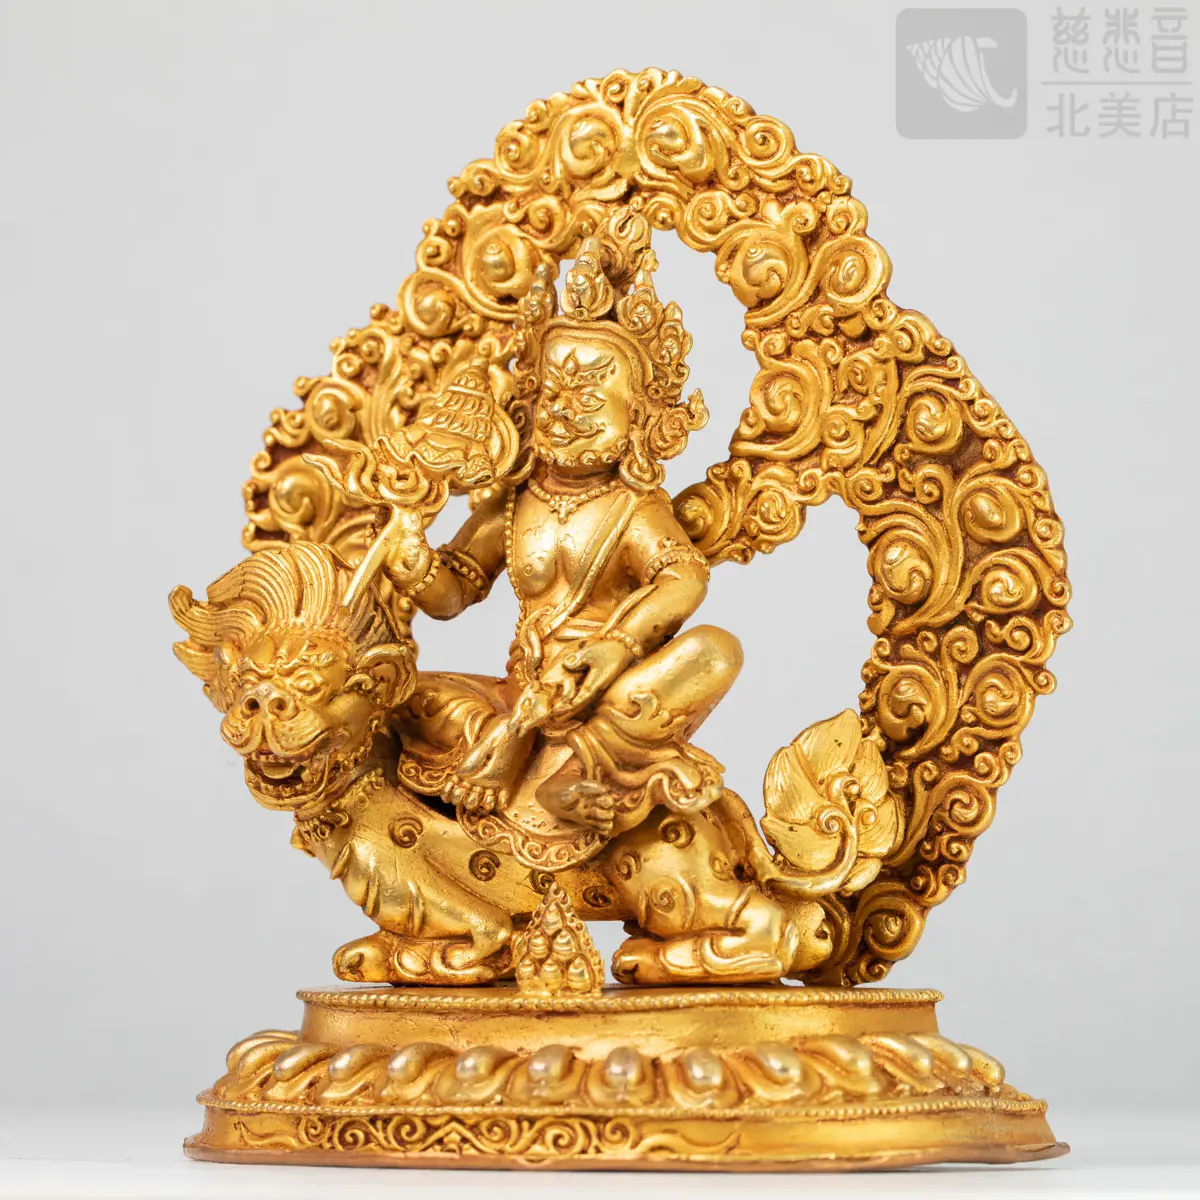 銅鍍金黃財神像- 菩提禪修學院